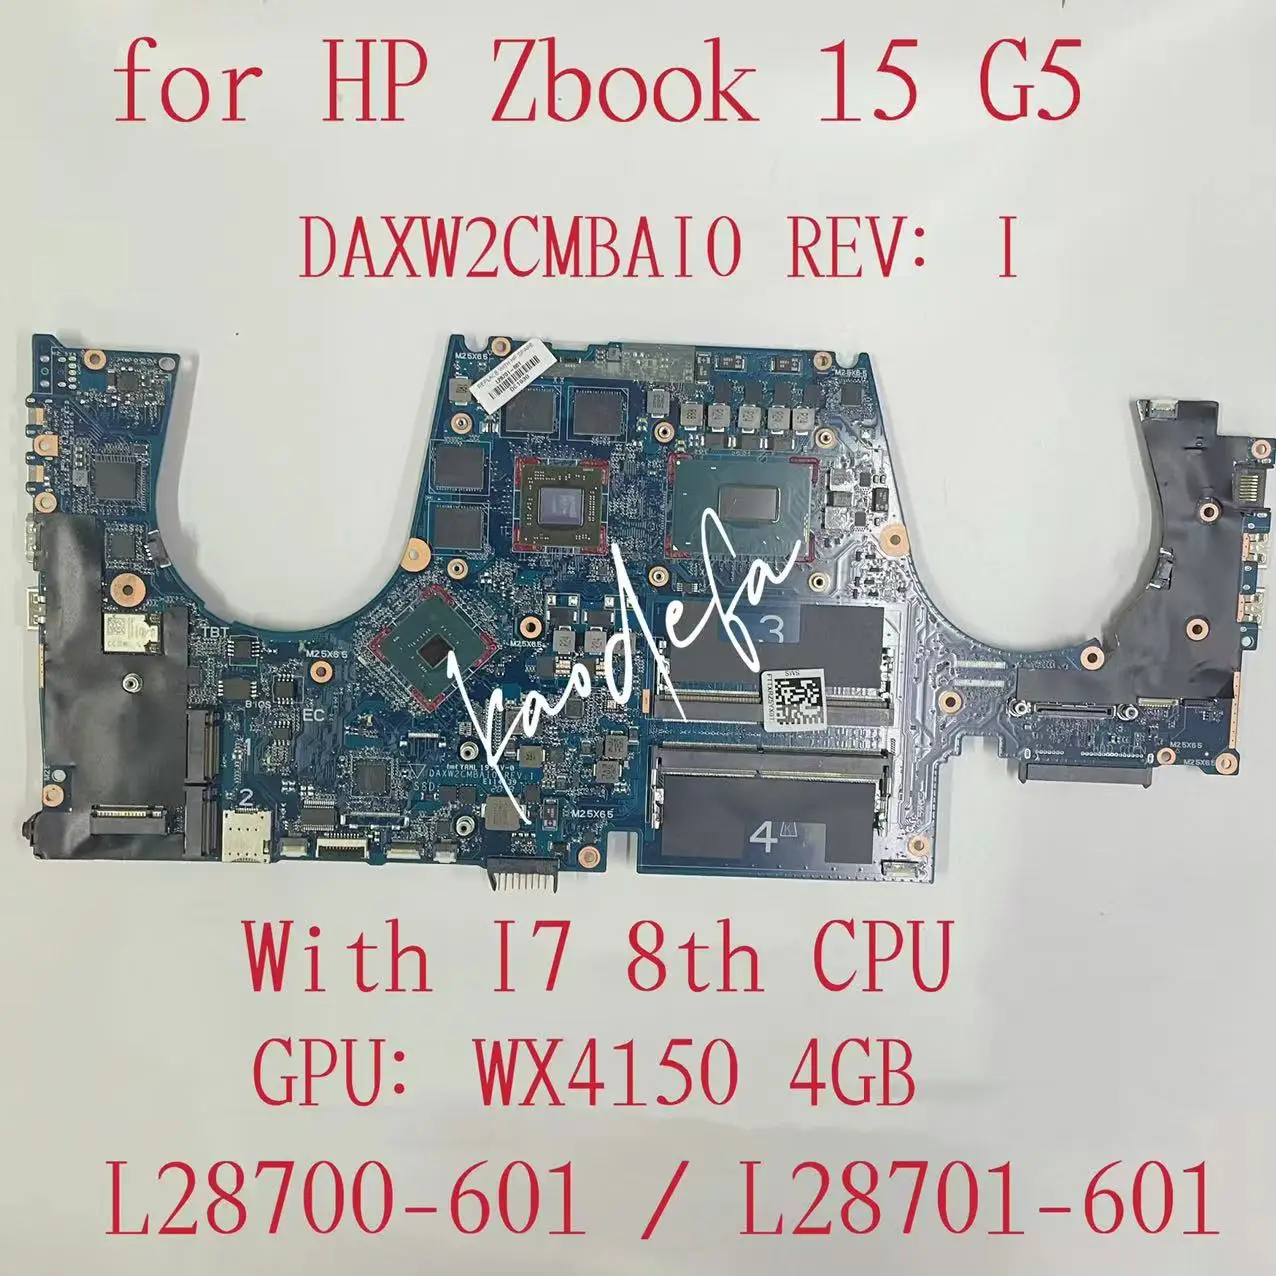 

DAXW2CMBAI0 Mainboard For HP ZBook 15 G5 Laptop Motherboard CPU:I7-8750H I7-8850H GPU:216-0896288 AMD 4GB L28700-601 L28701-601